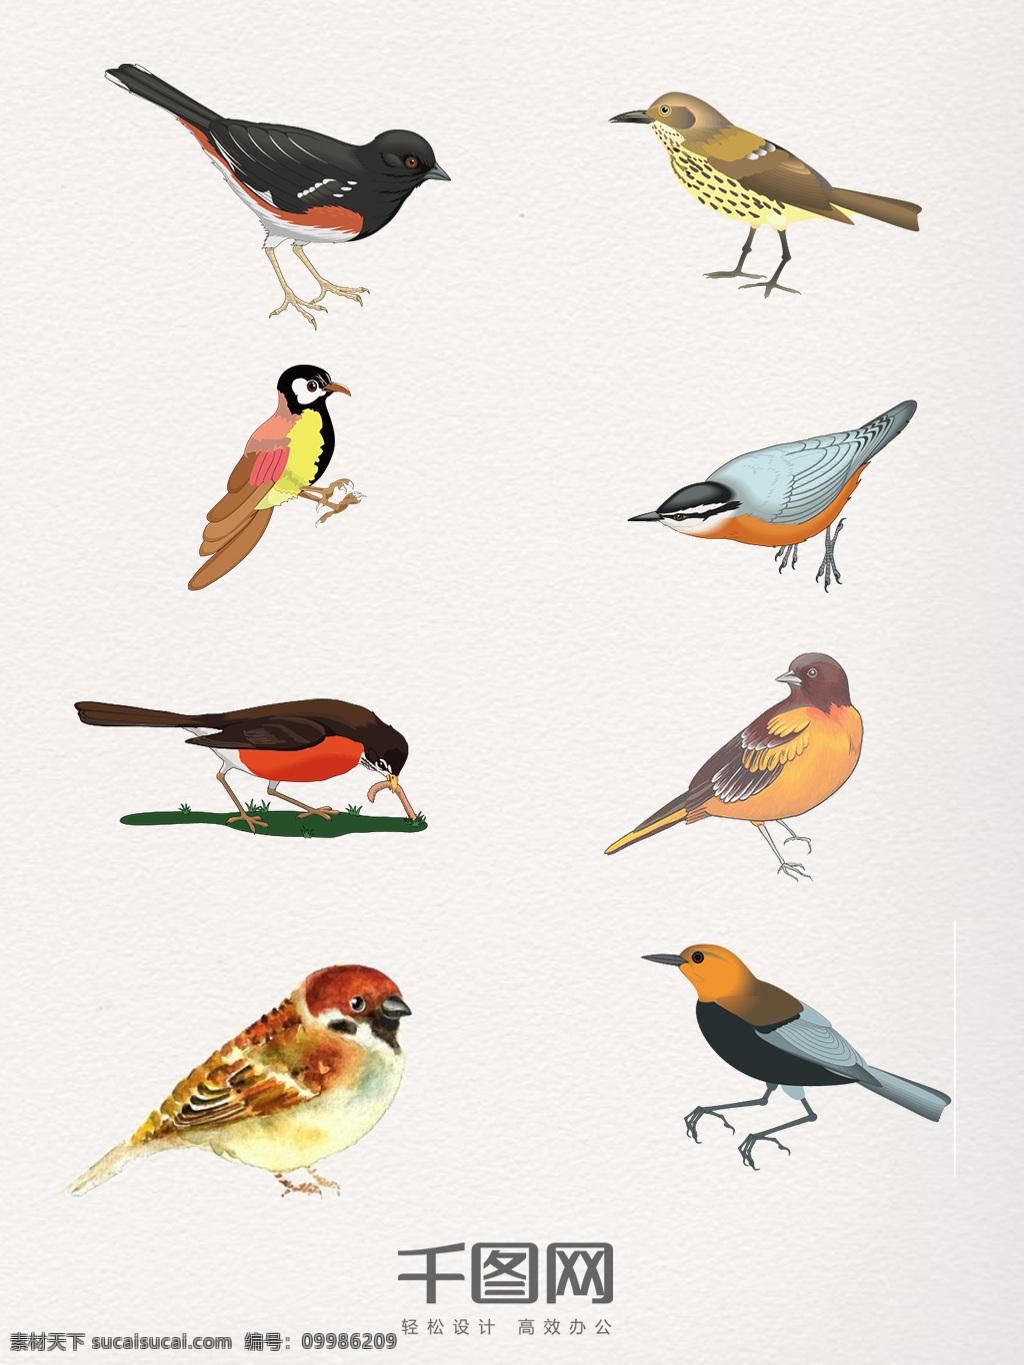 组 生动 多彩 麻雀 手 绘图 动物 鸟类 手绘 可爱的小鸟 卡通图案 麻雀觅食 色彩